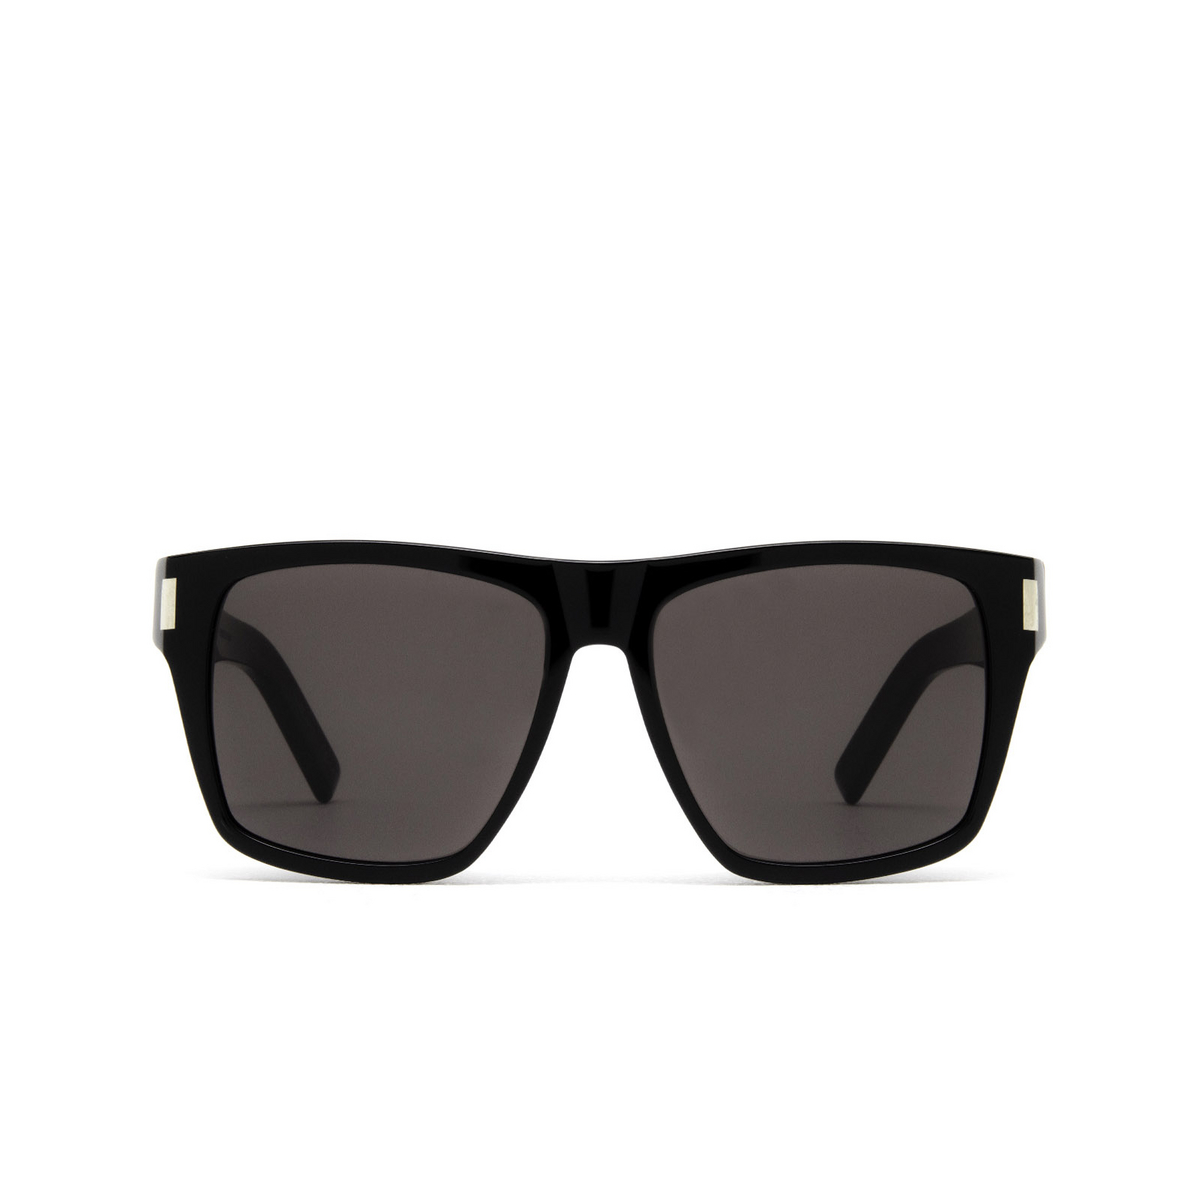 Saint Laurent® Square Sunglasses: SL 424 color Black 001 - front view.